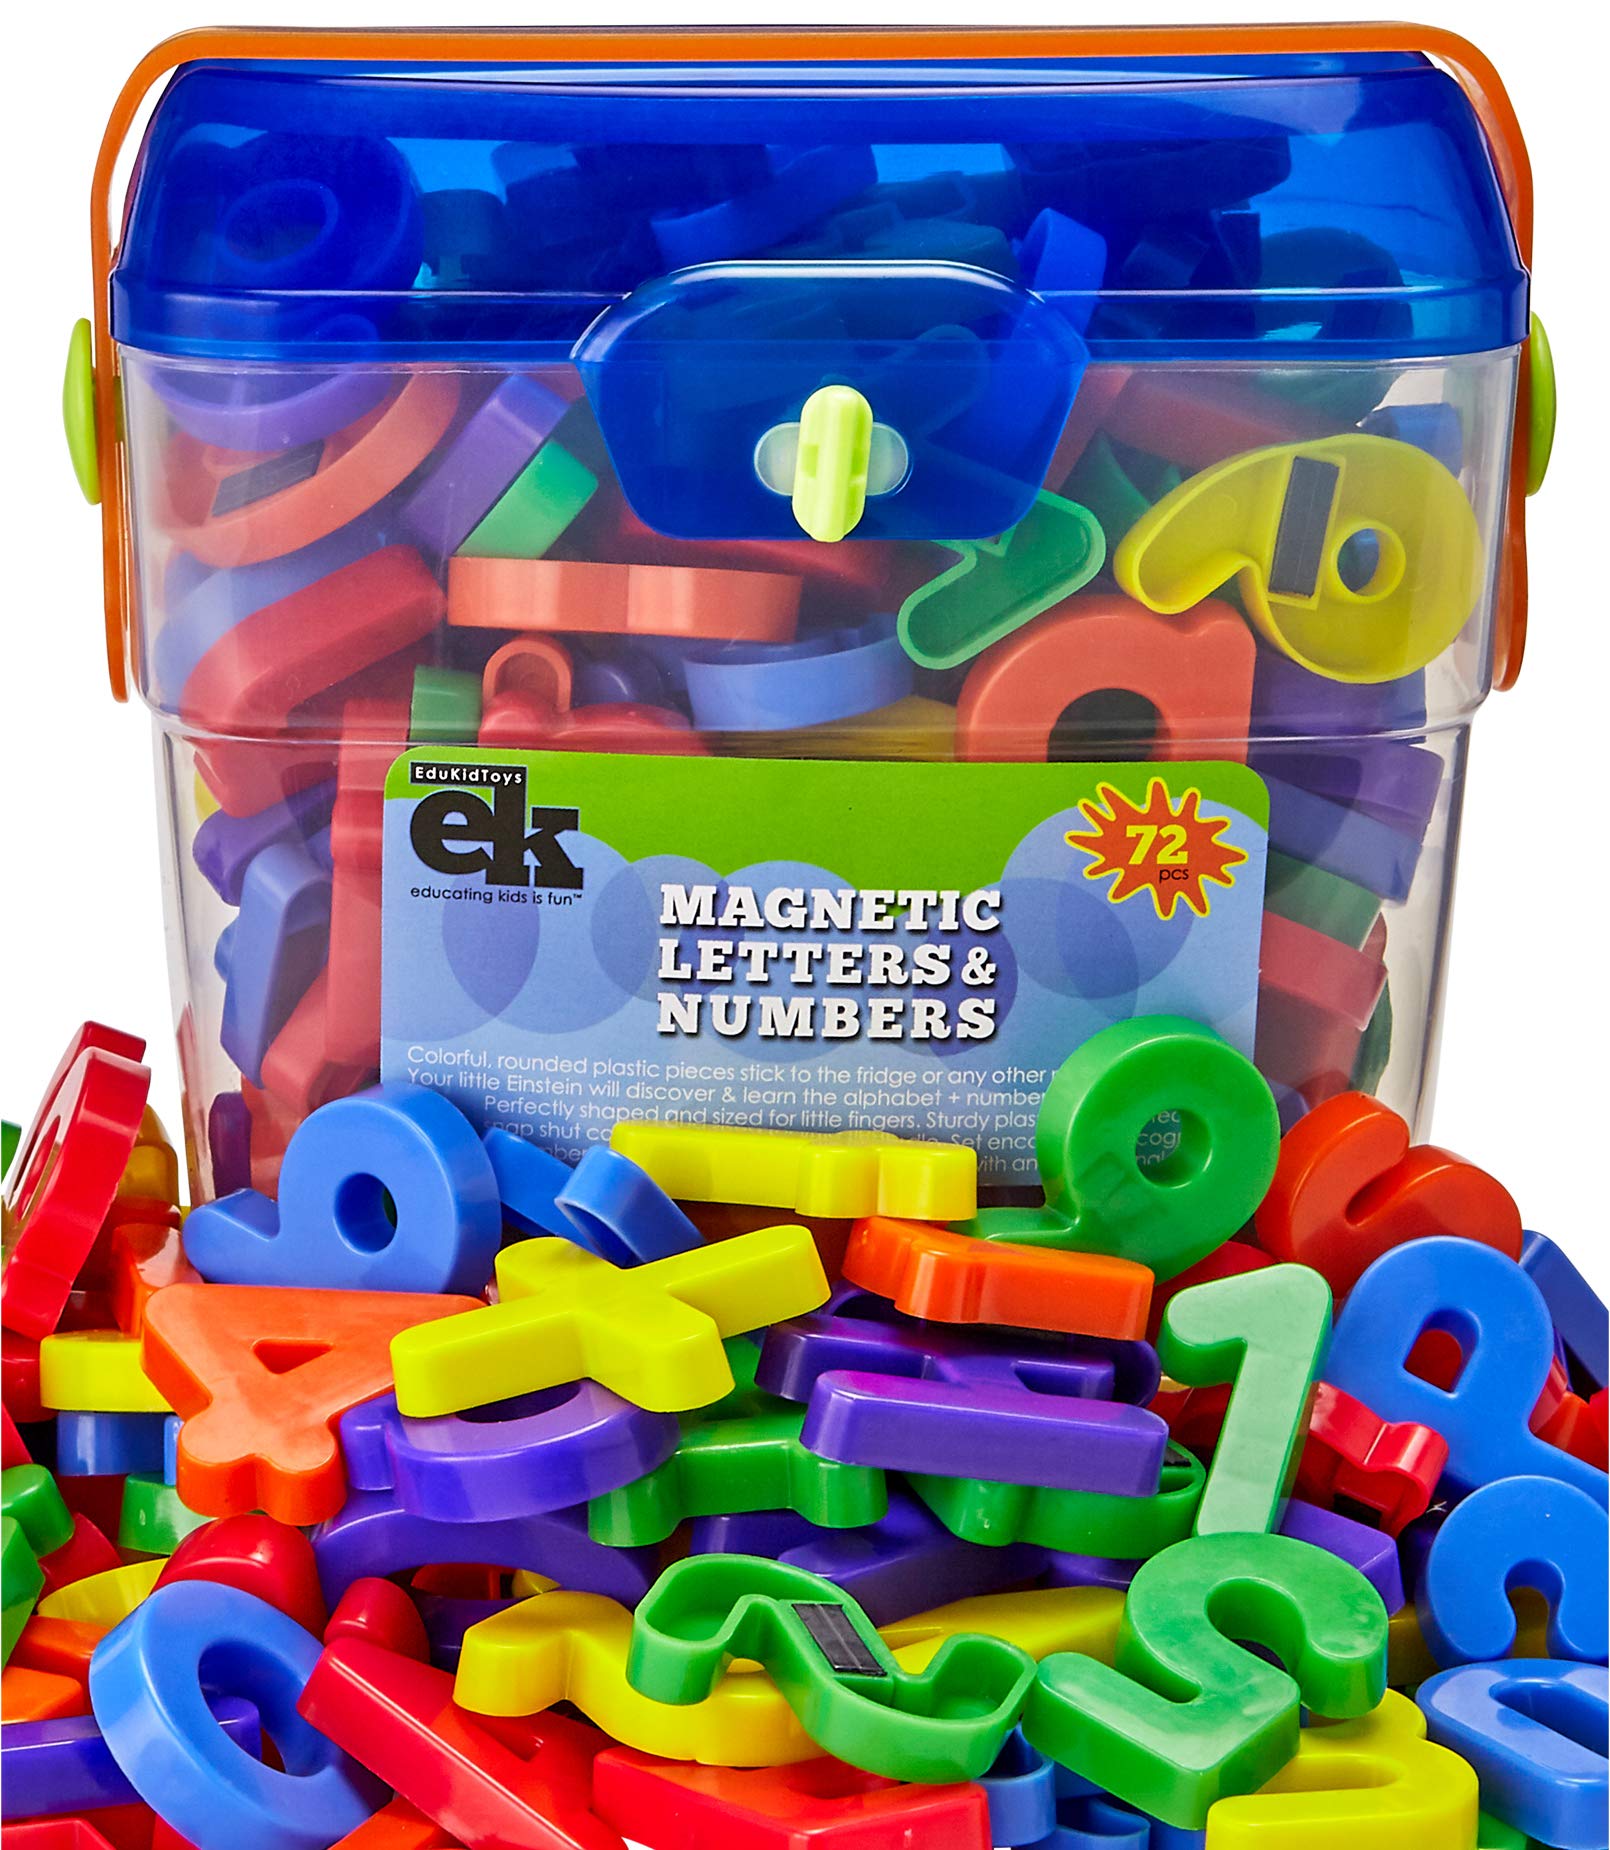 Greek 72 Alphabet Magnetic Letters Color Toy School Education fm Greece Fridge 